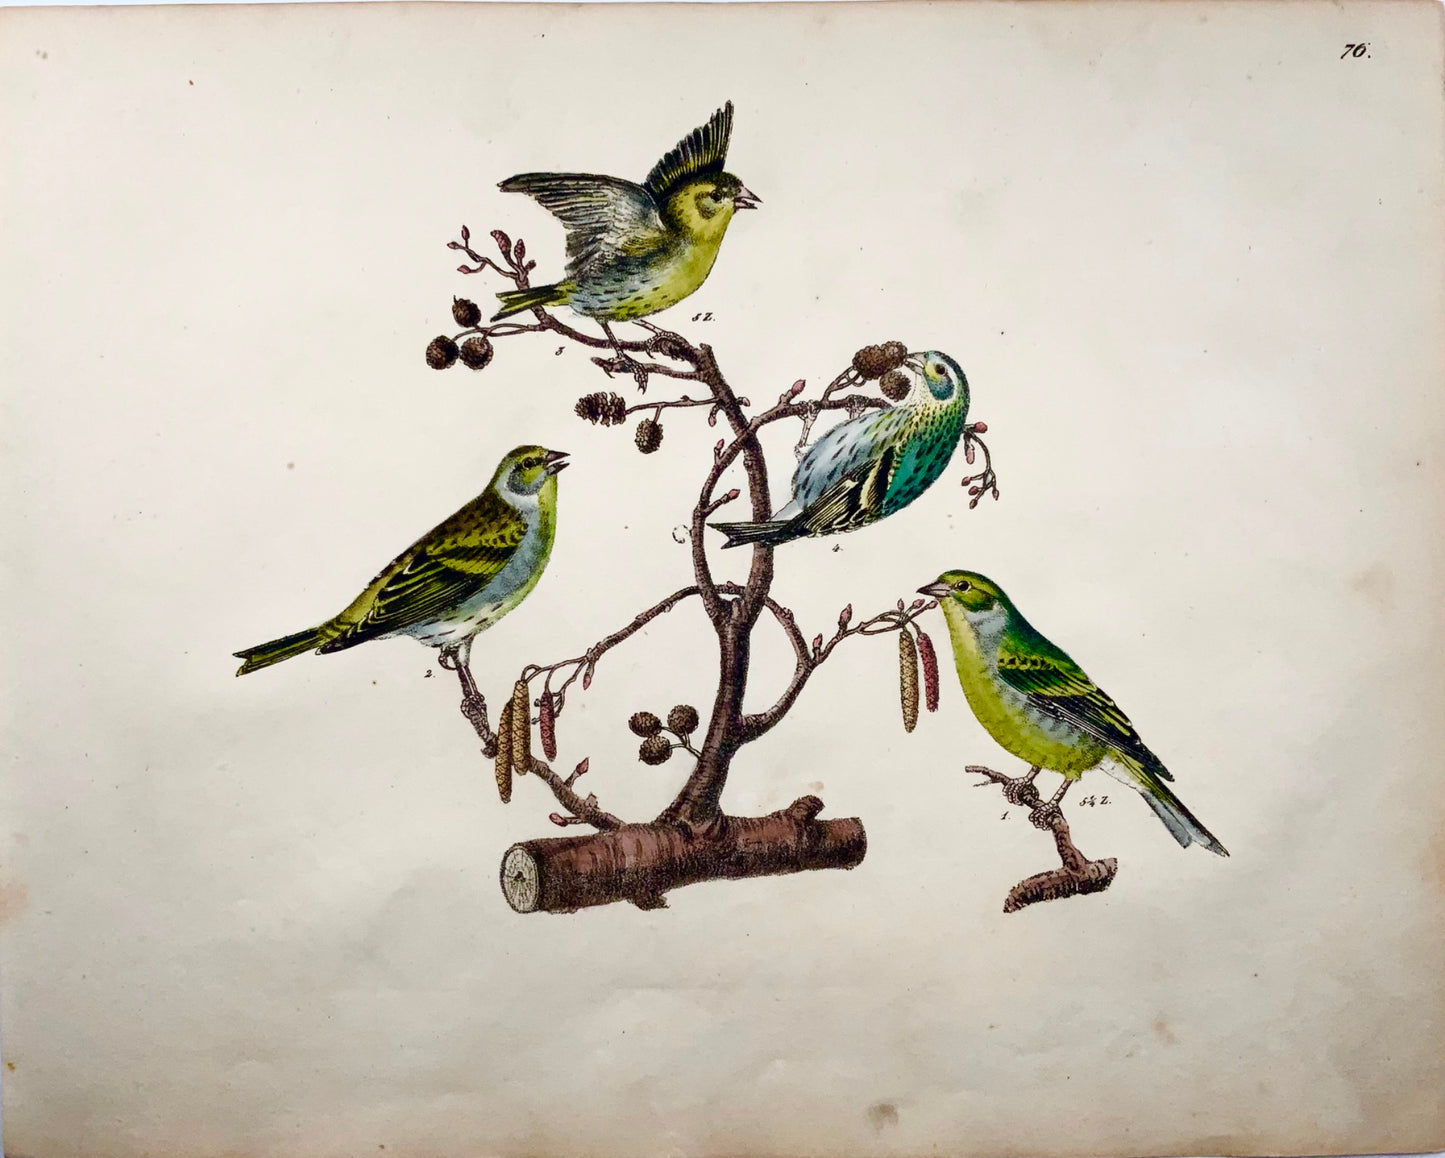 1819 Canari, pinson, oiseaux chanteurs, ornithologie, Strack, lithographie à la craie, couleur à la main